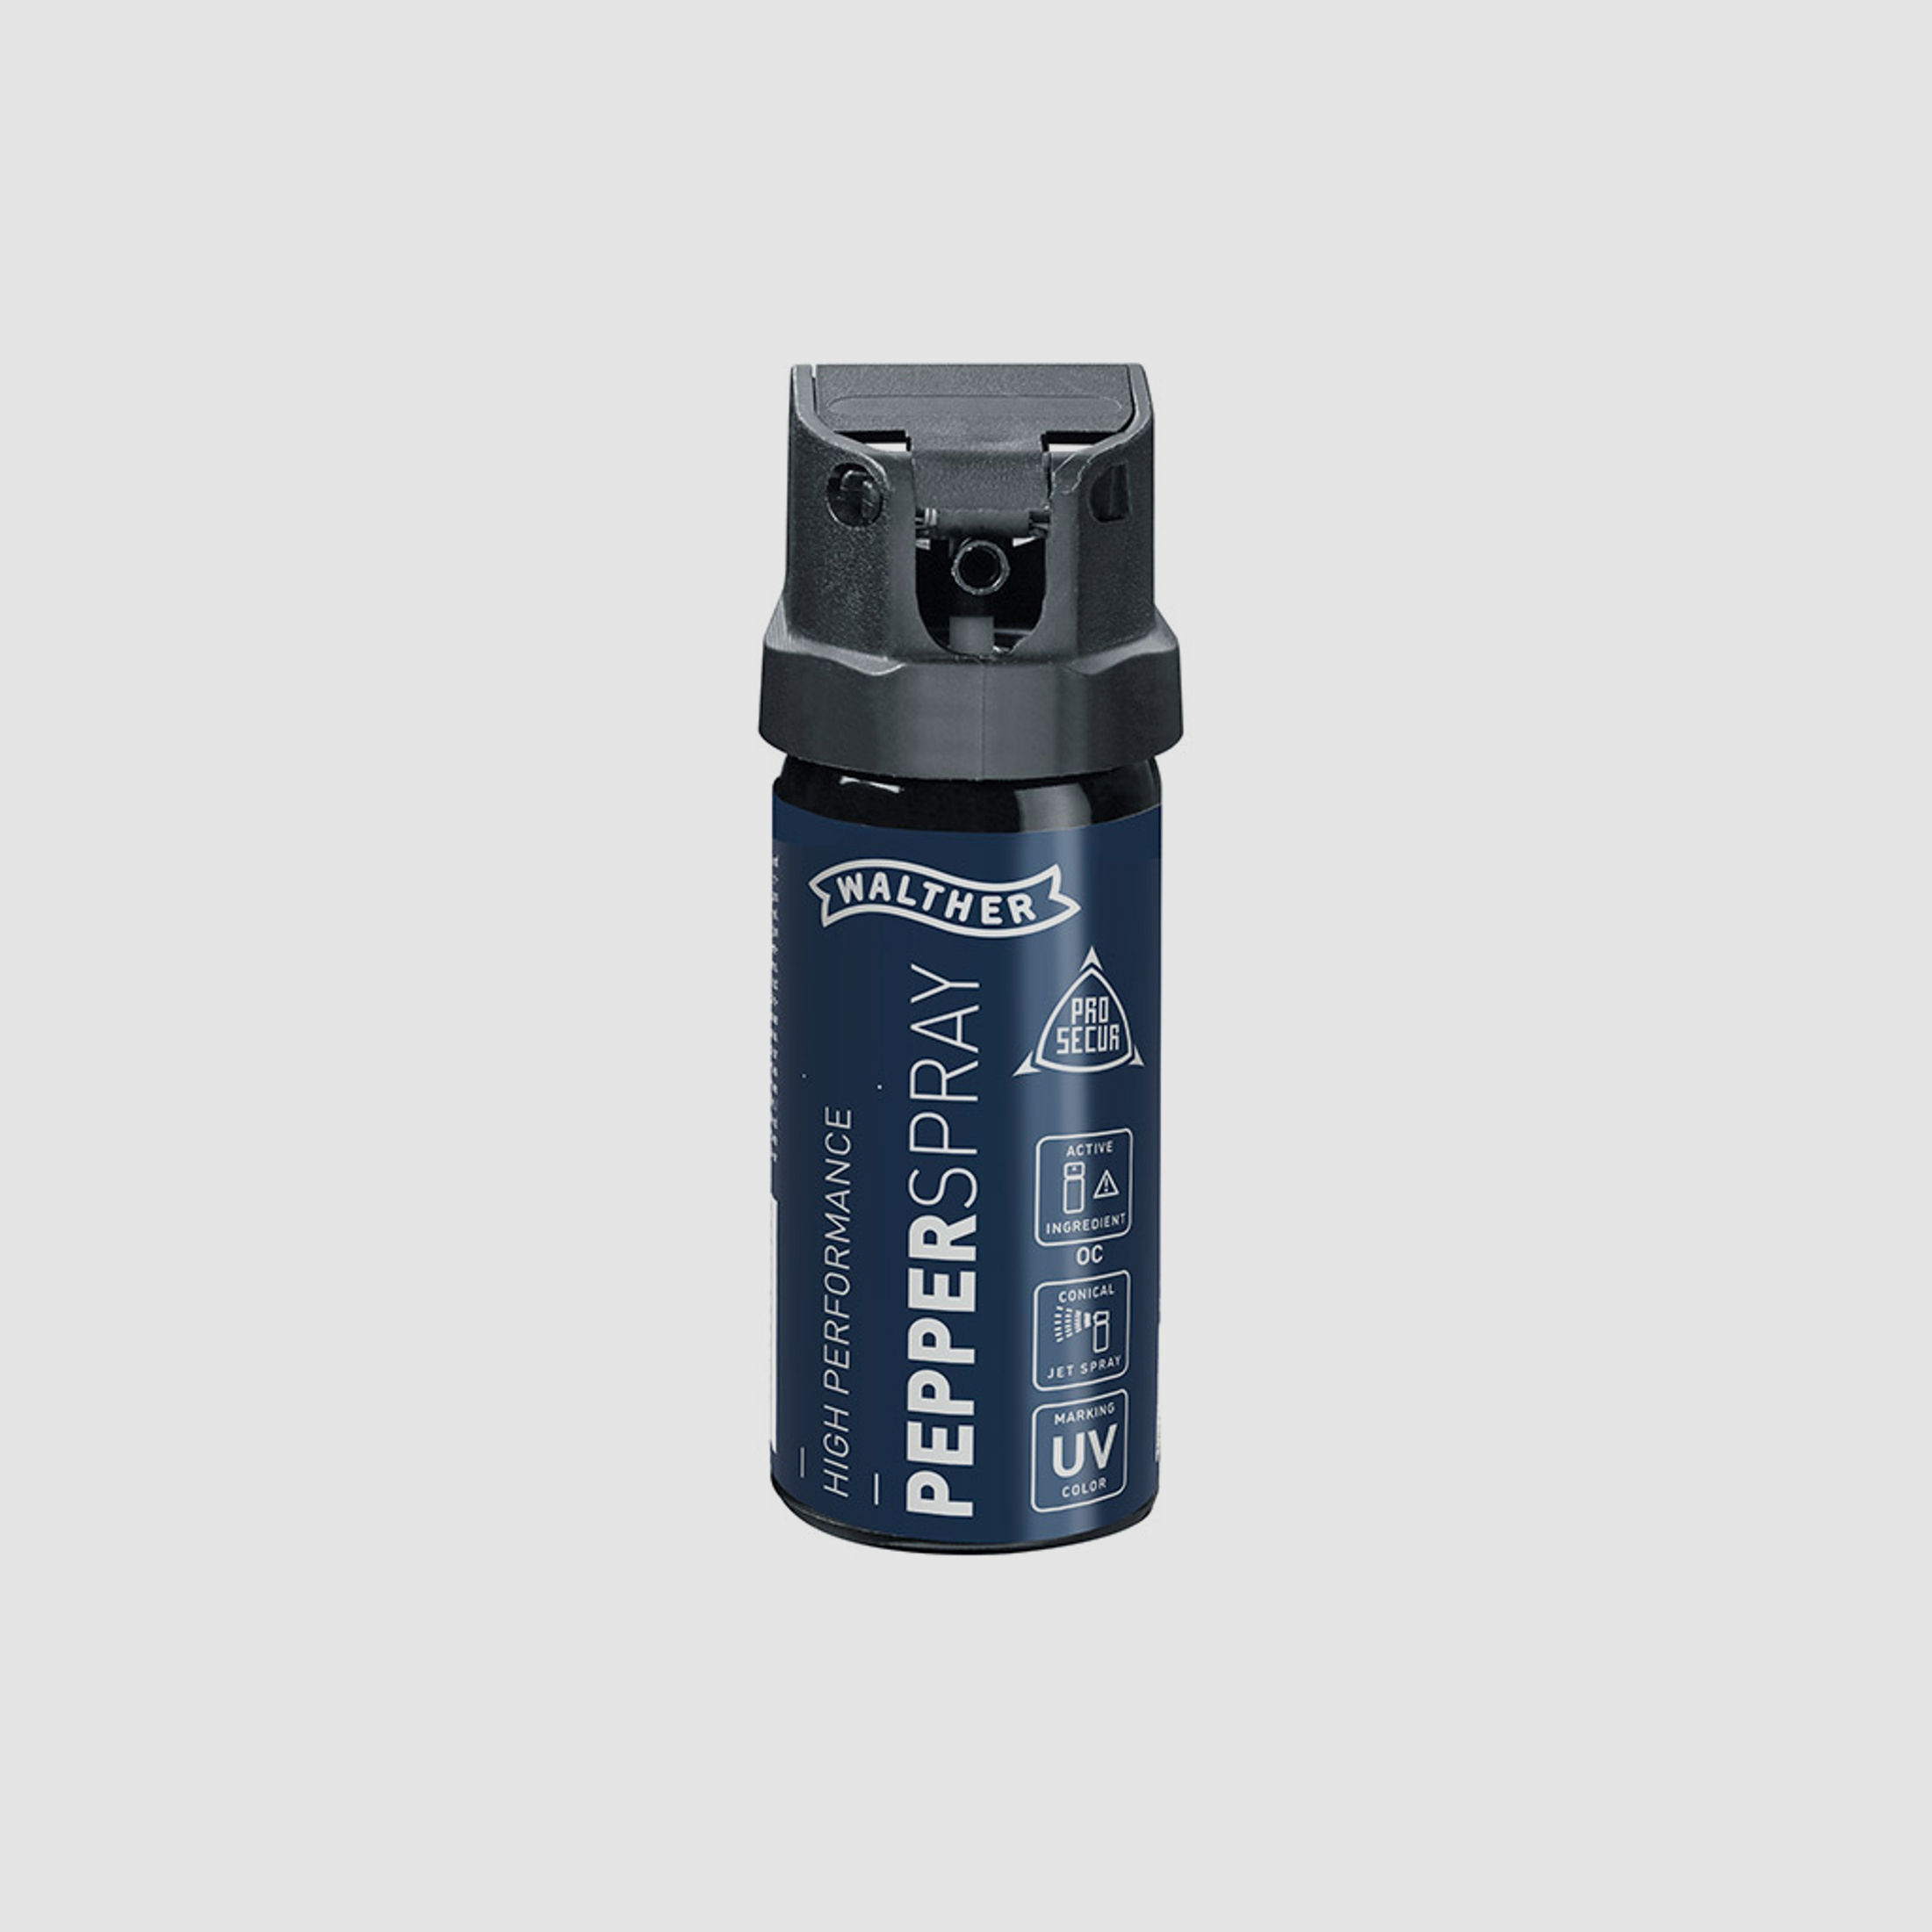 Pfefferspray Walther ProSecur, Wirkstoff 10% OC, UV Partikel, konischer Strahl, Inhalt 53 ml